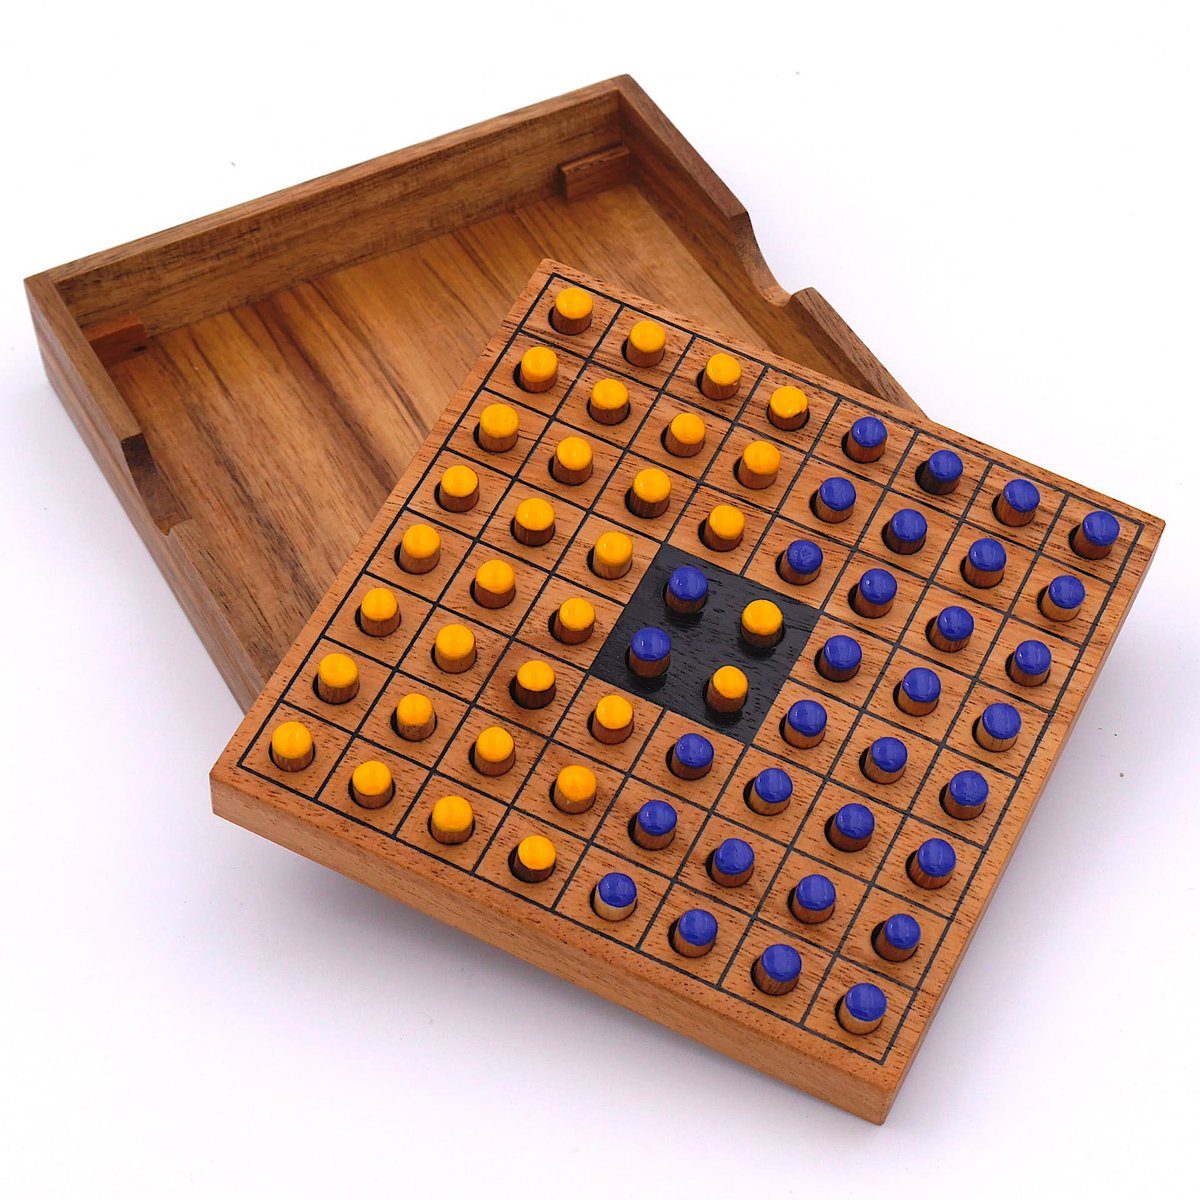 Holz, Denkspiele Personen Reversi edlem Interessantes gelb/blau Brettspiel Spiel, Strategiespiel 2 aus für ROMBOL Holzspiel –